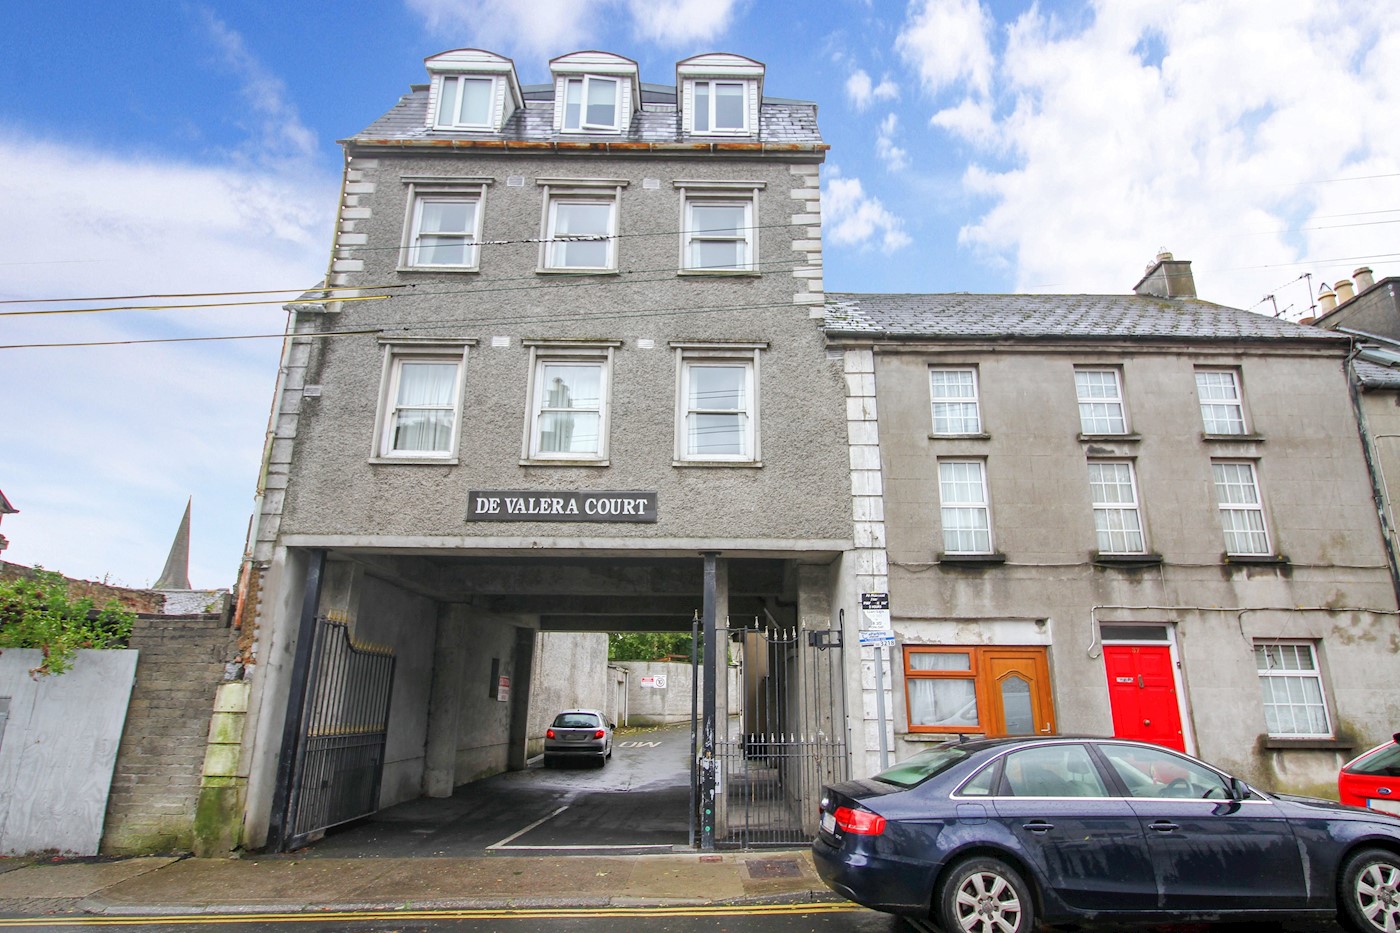 Apartment 2, De Valera Court, Summerhill, Nenagh, Co. Tipperary, E45 E202 1/8